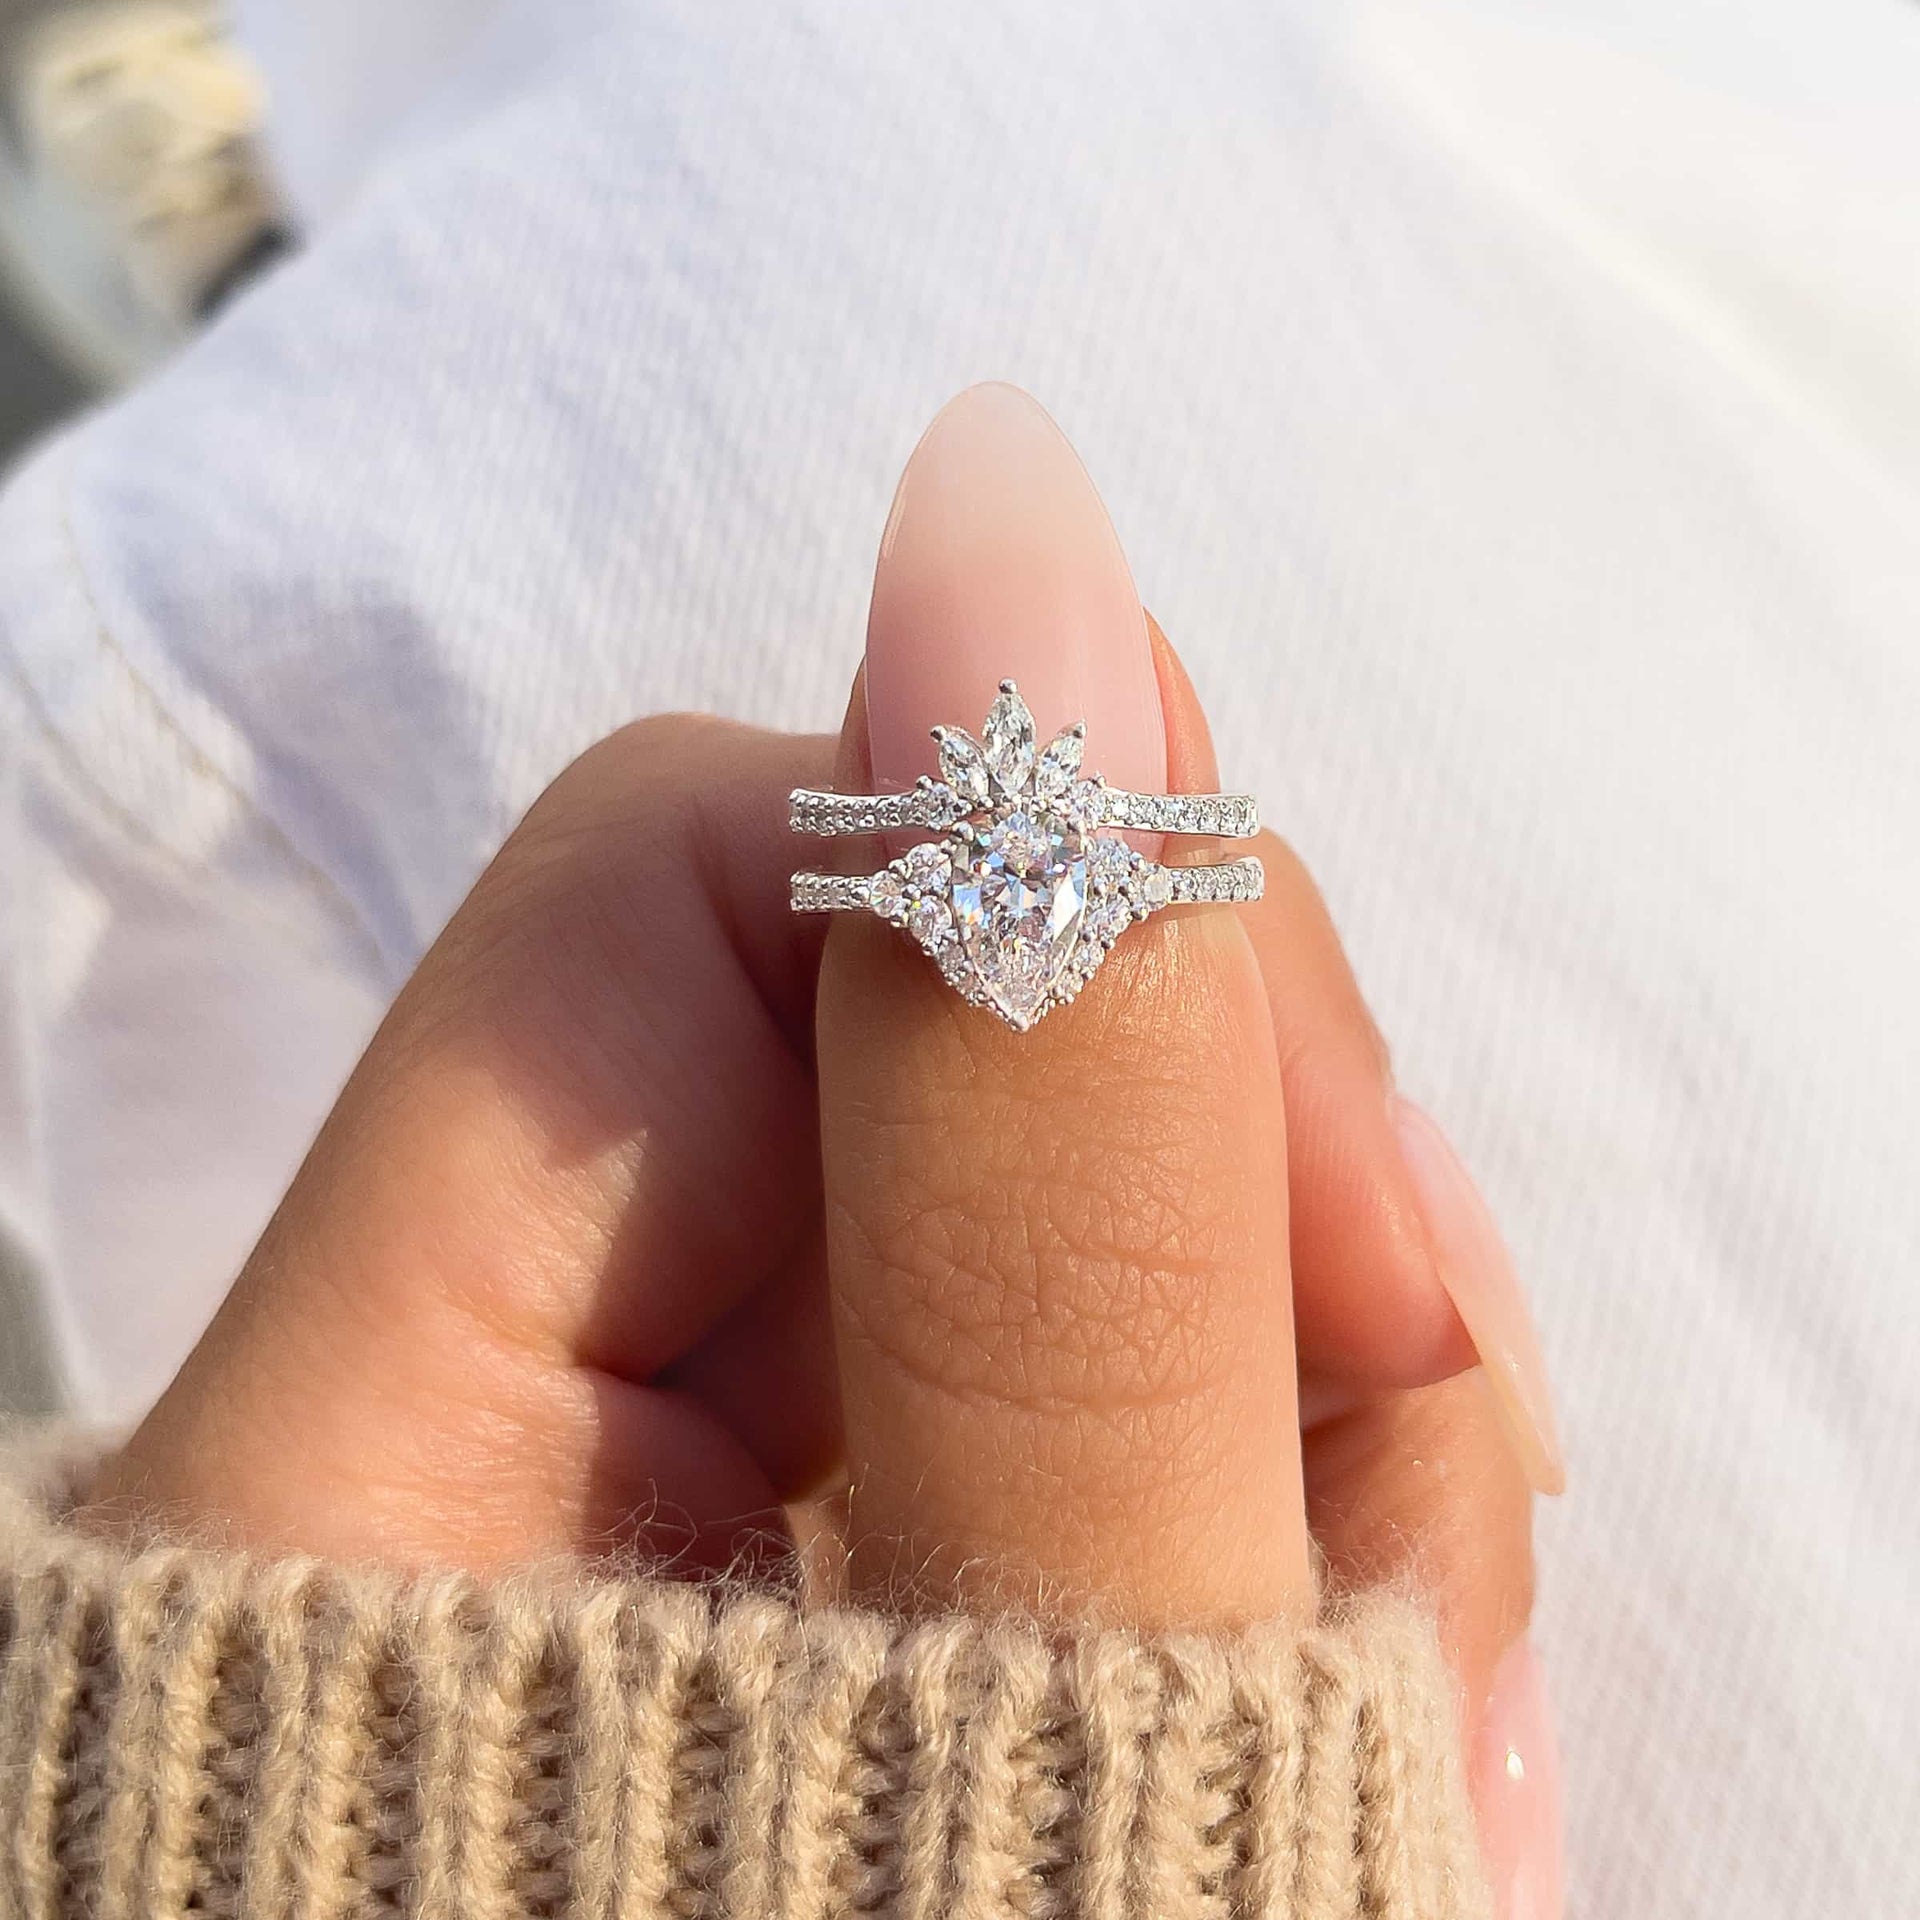 Woman pinching beautiful vintage wedding ring set